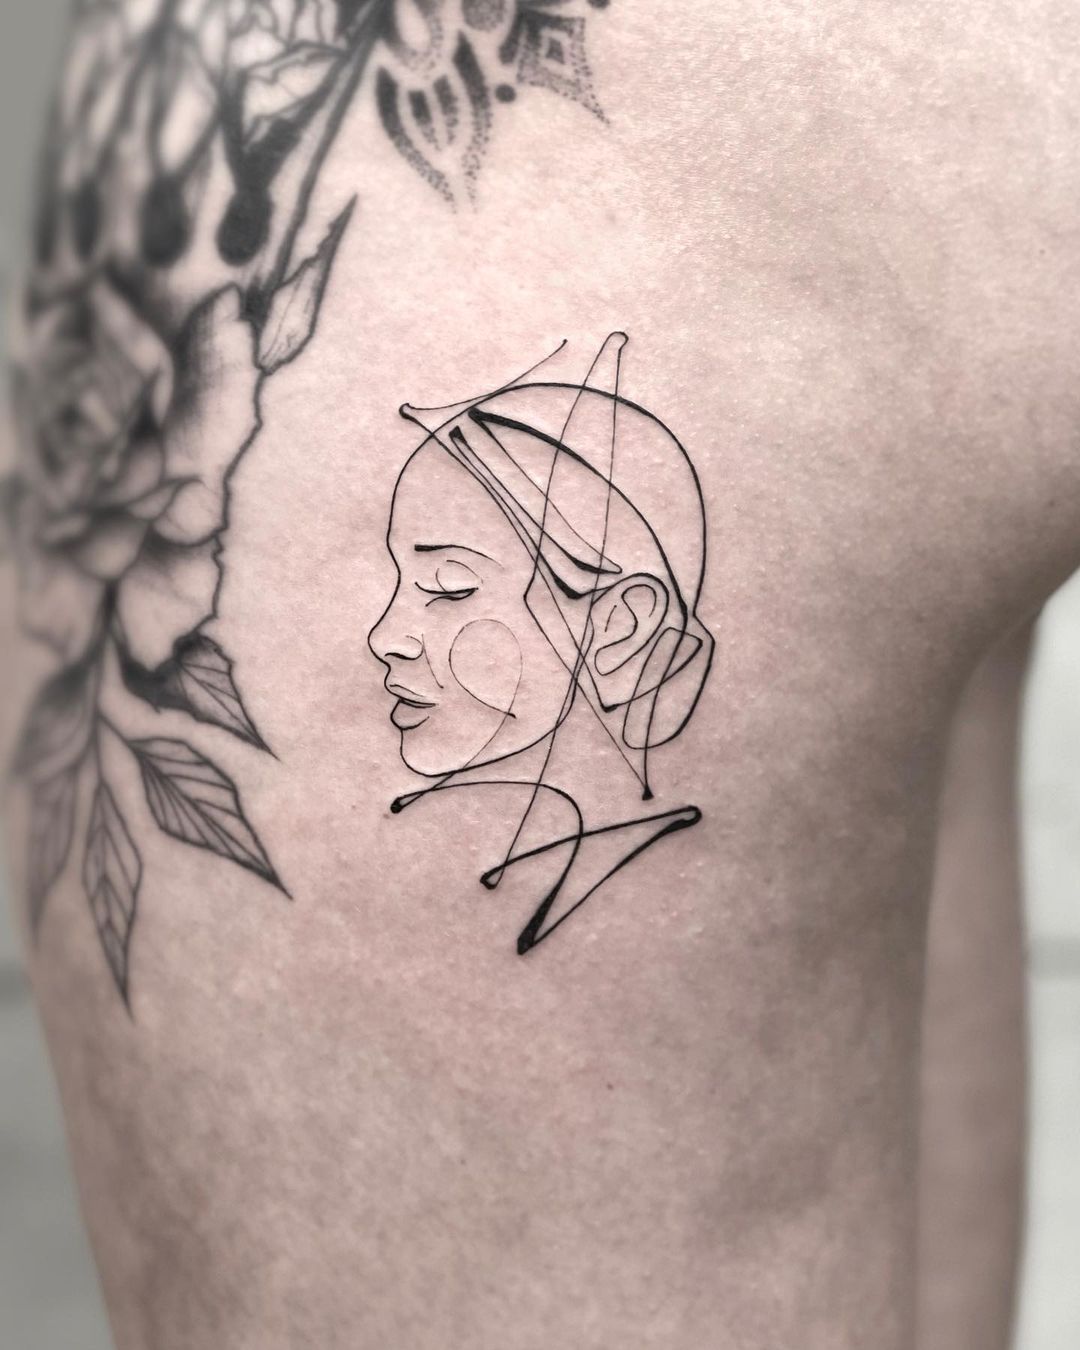 Michał abstrakcyjno-graficzny tatuażysta